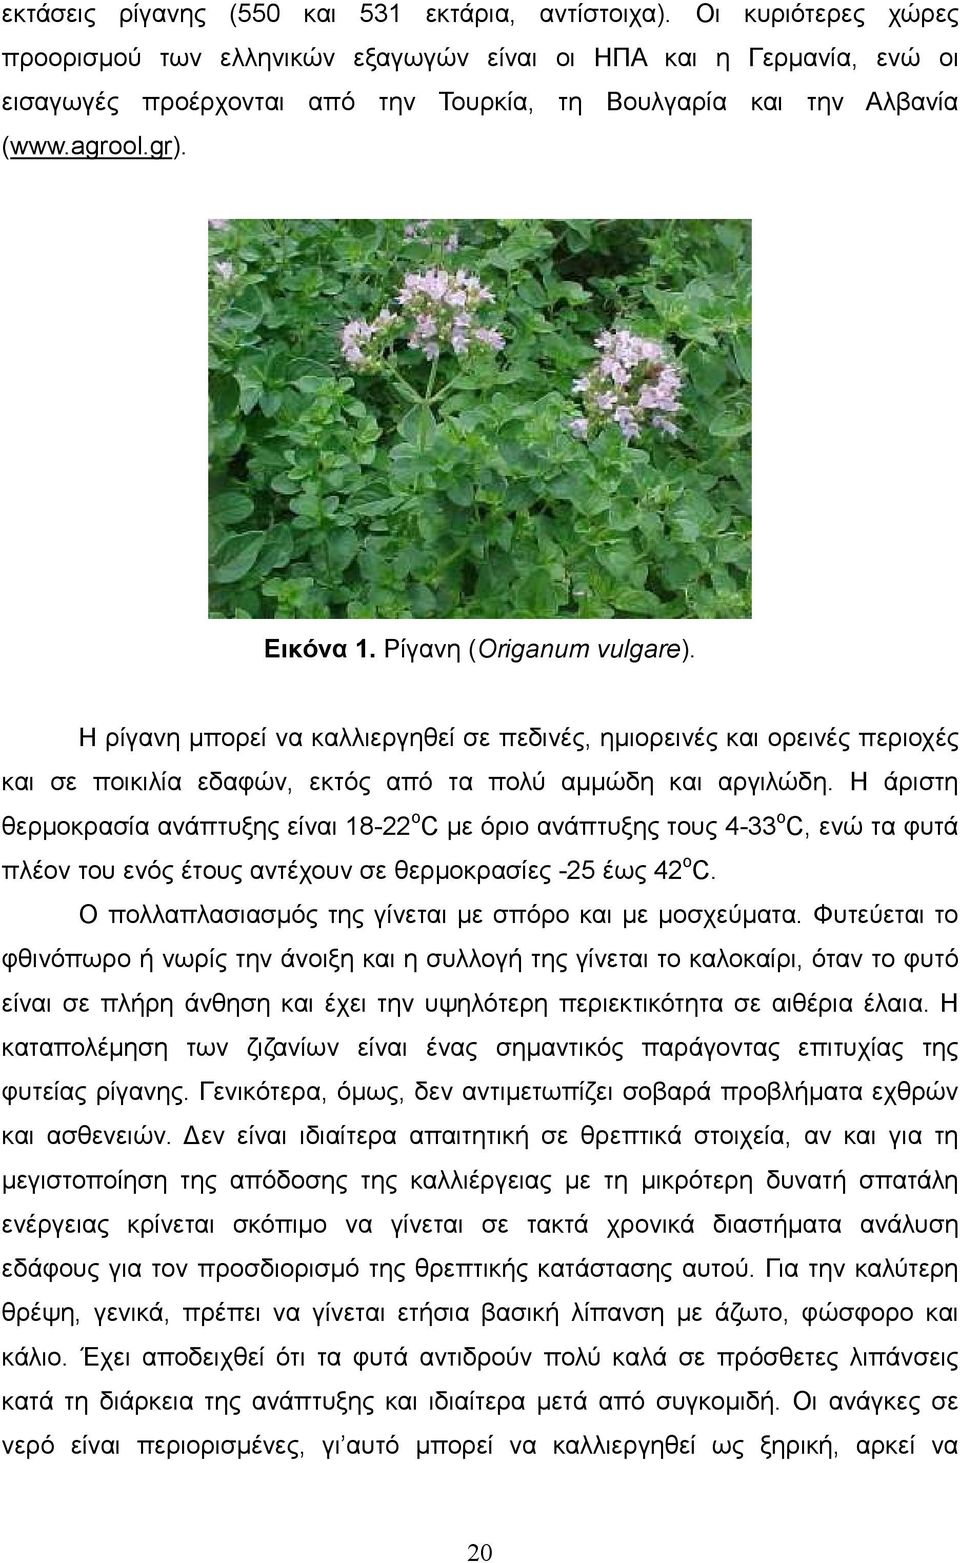 Ρίγανη (Origanum vulgare). Η ρίγανη µπορεί να καλλιεργηθεί σε πεδινές, ηµιορεινές και ορεινές περιοχές και σε ποικιλία εδαφών, εκτός από τα πολύ αµµώδη και αργιλώδη.